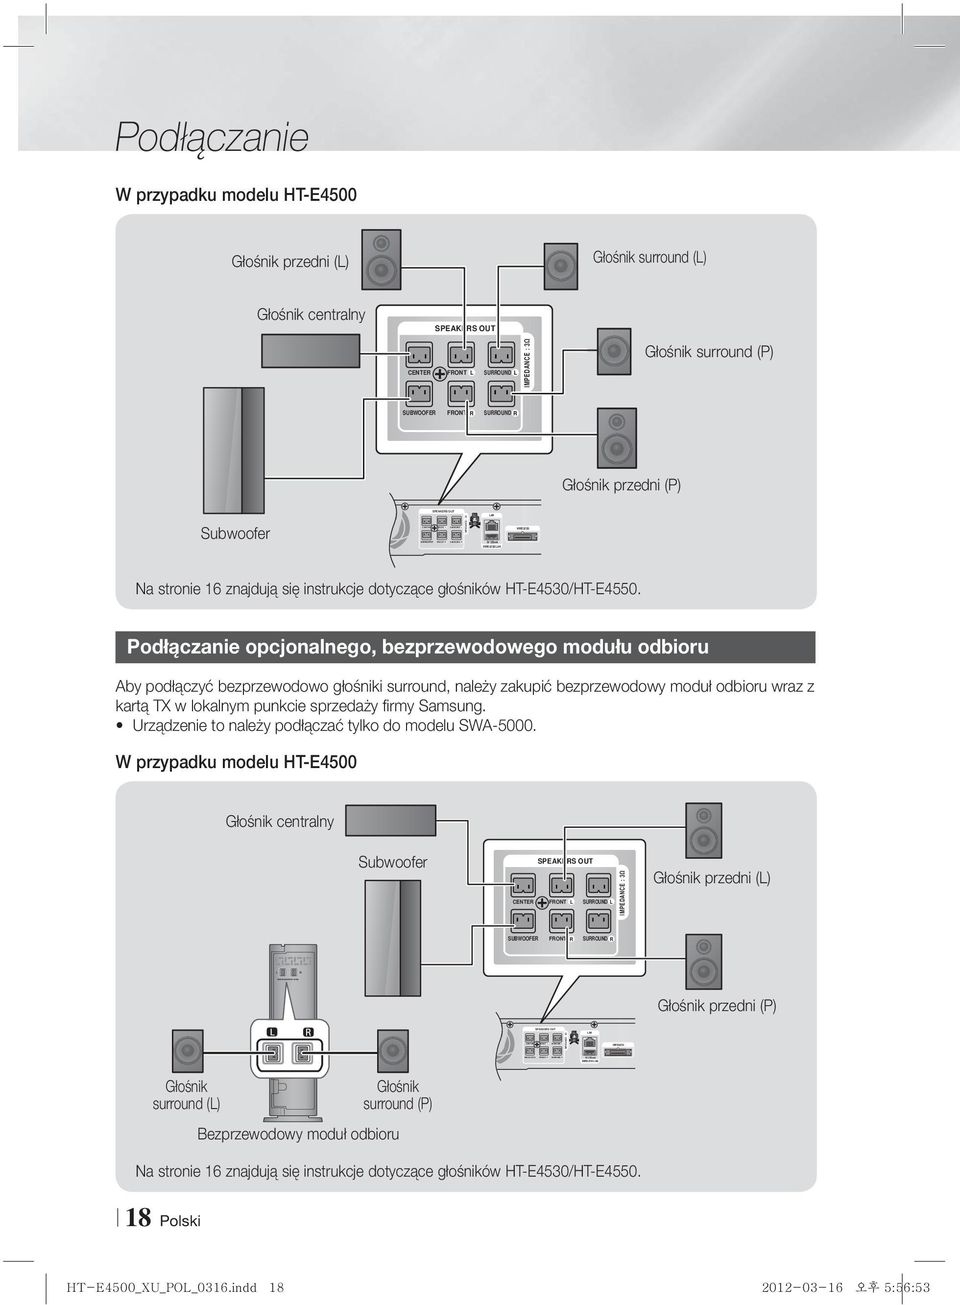 SURROUND R Głośnik przedni (P) Subwoofer IMPEDANCE : 3 Na stronie 16 znajdują się instrukcje dotyczące głośników HT-E4530/HT-E4550.